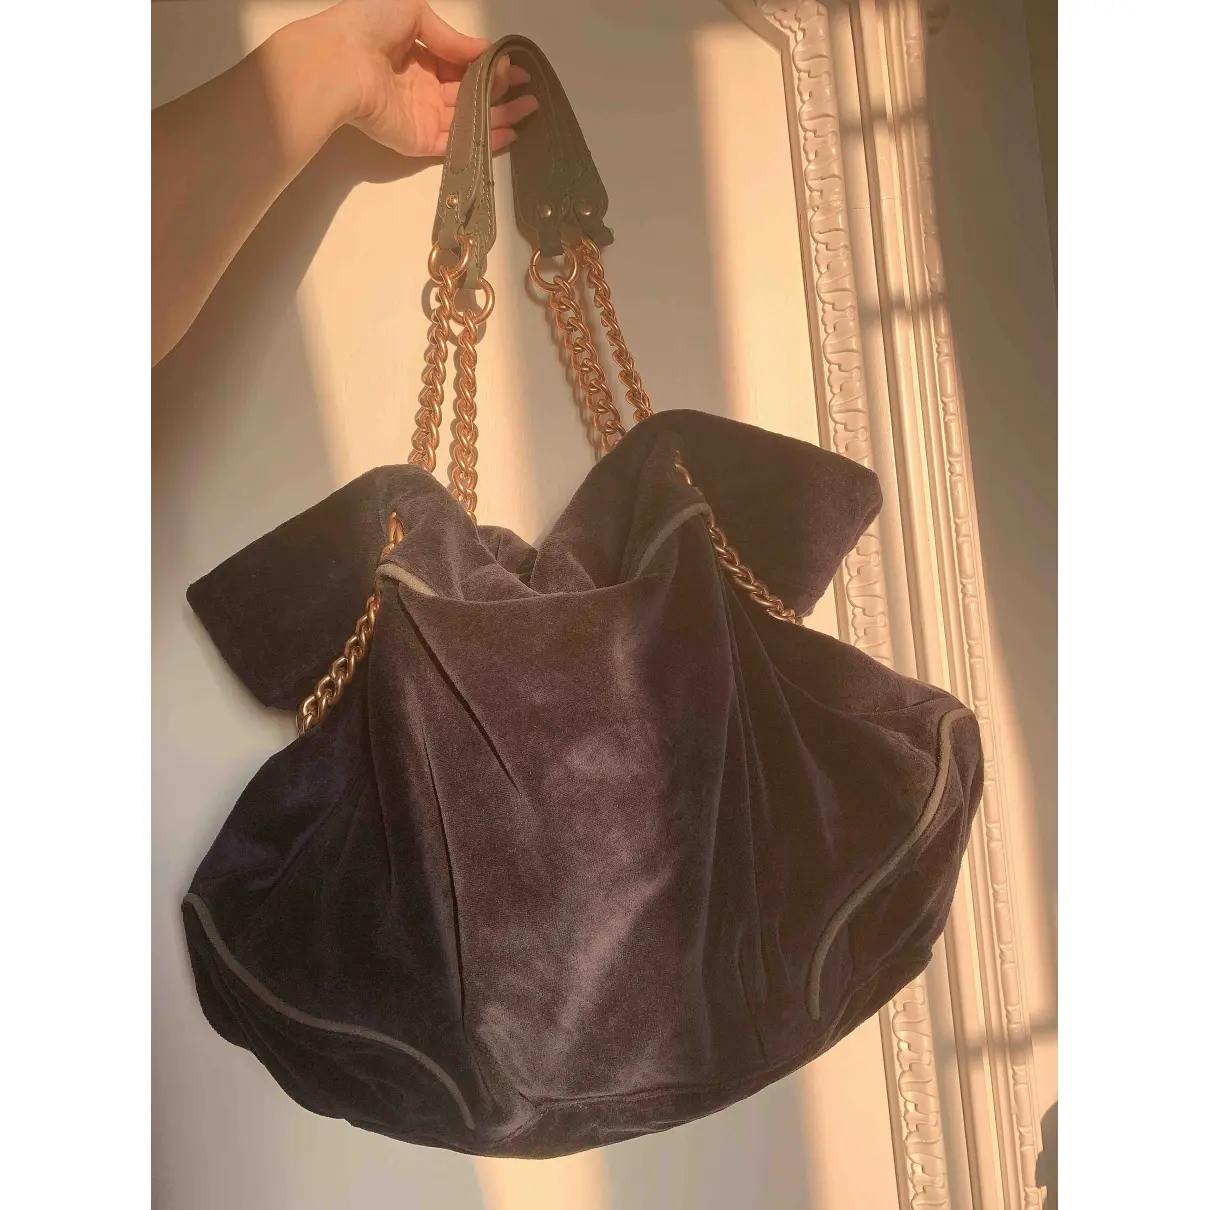 Buy Juicy Couture Velvet bag online